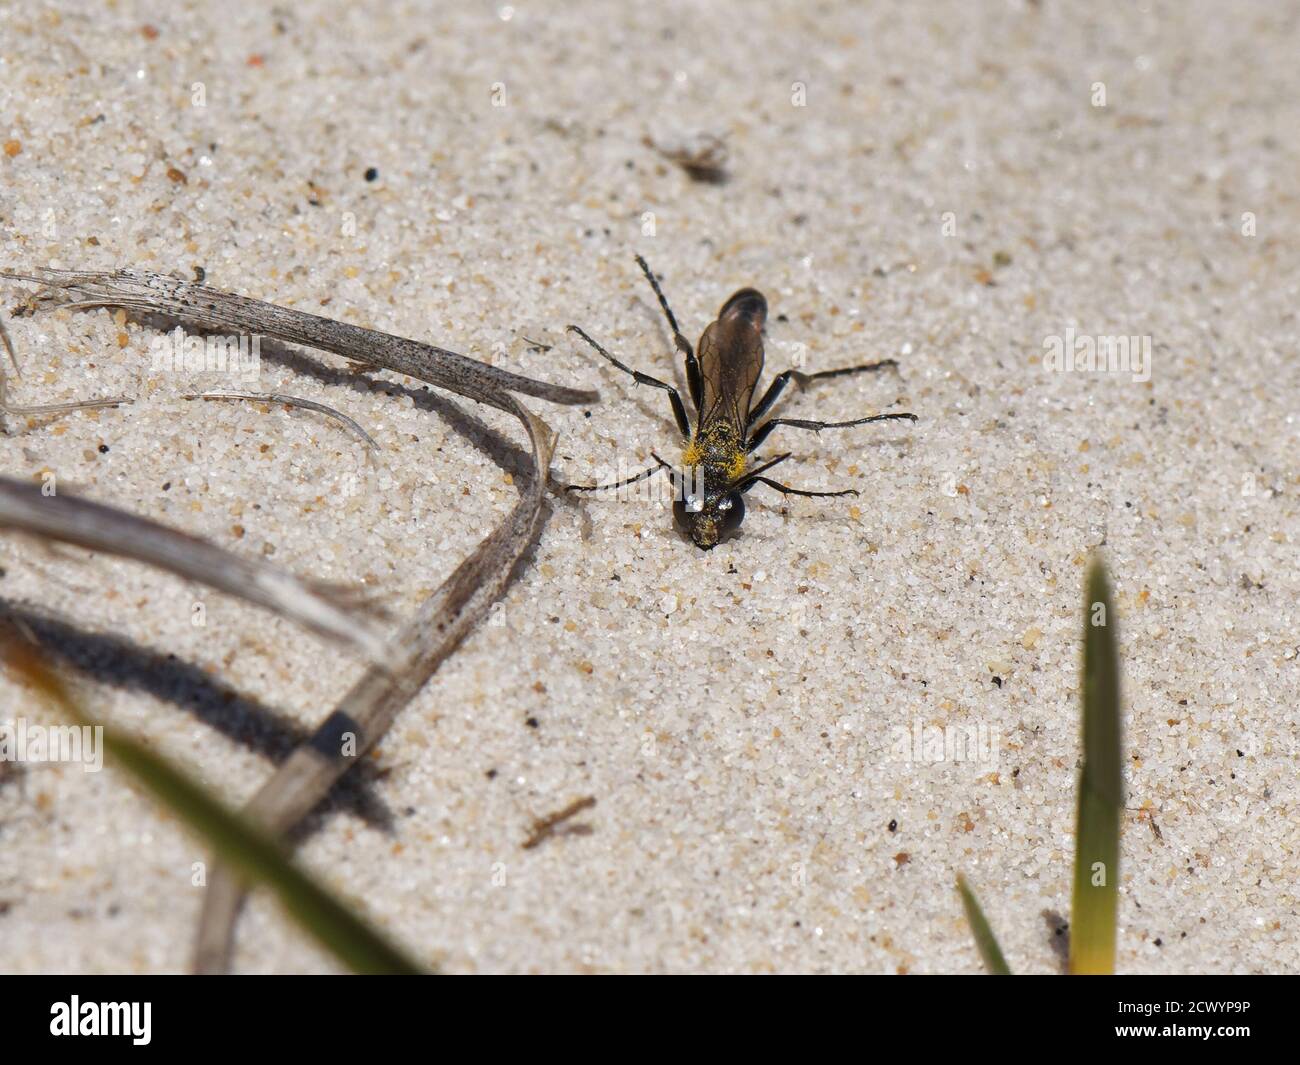 Avispa de arena de Heath (Ammophila pubescens) tomando sol en las dunas de arena bajo el sol caliente y levantando sus piernas, Dorset breathland, Reino Unido, mayo. Foto de stock